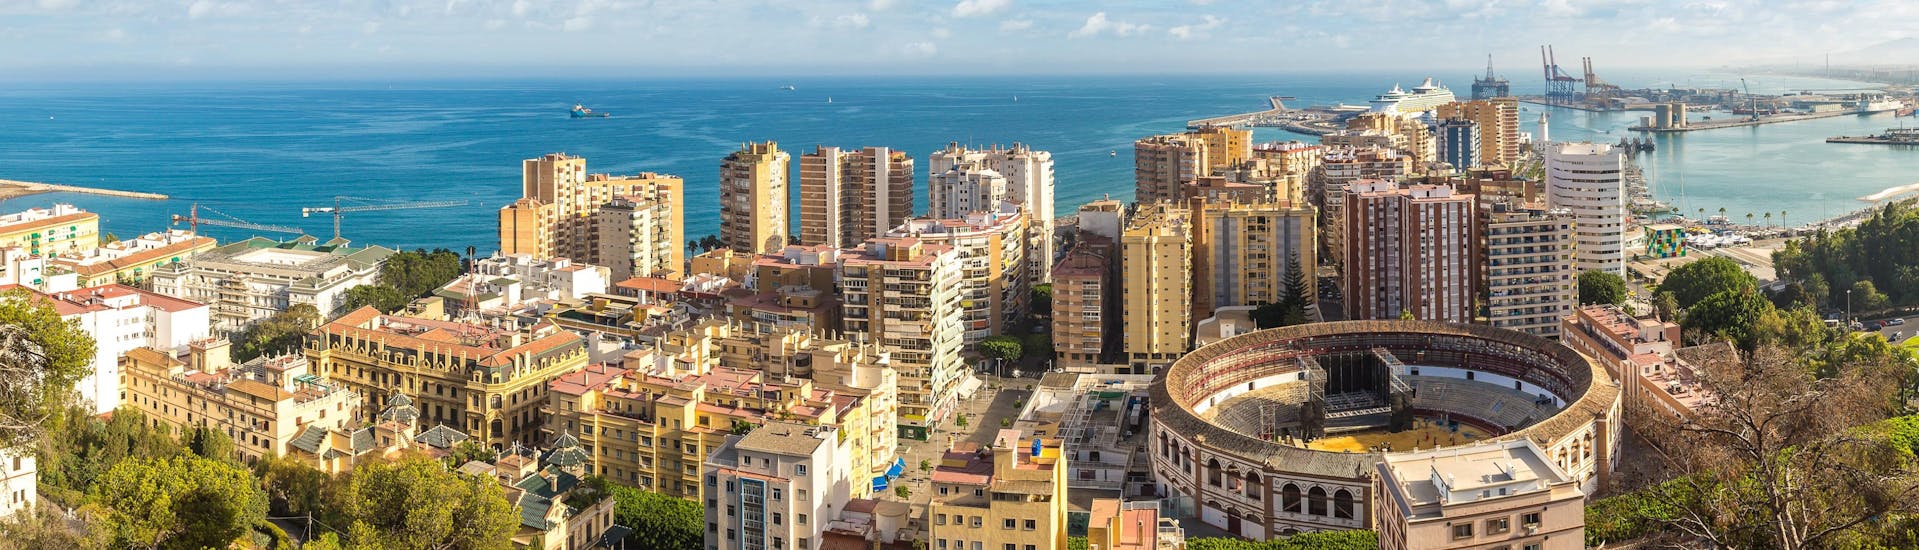 Blick auf Málaga und den Hafen, ein beliebtes Urlaubsziel für Wassersport und Bootsfahrten. 